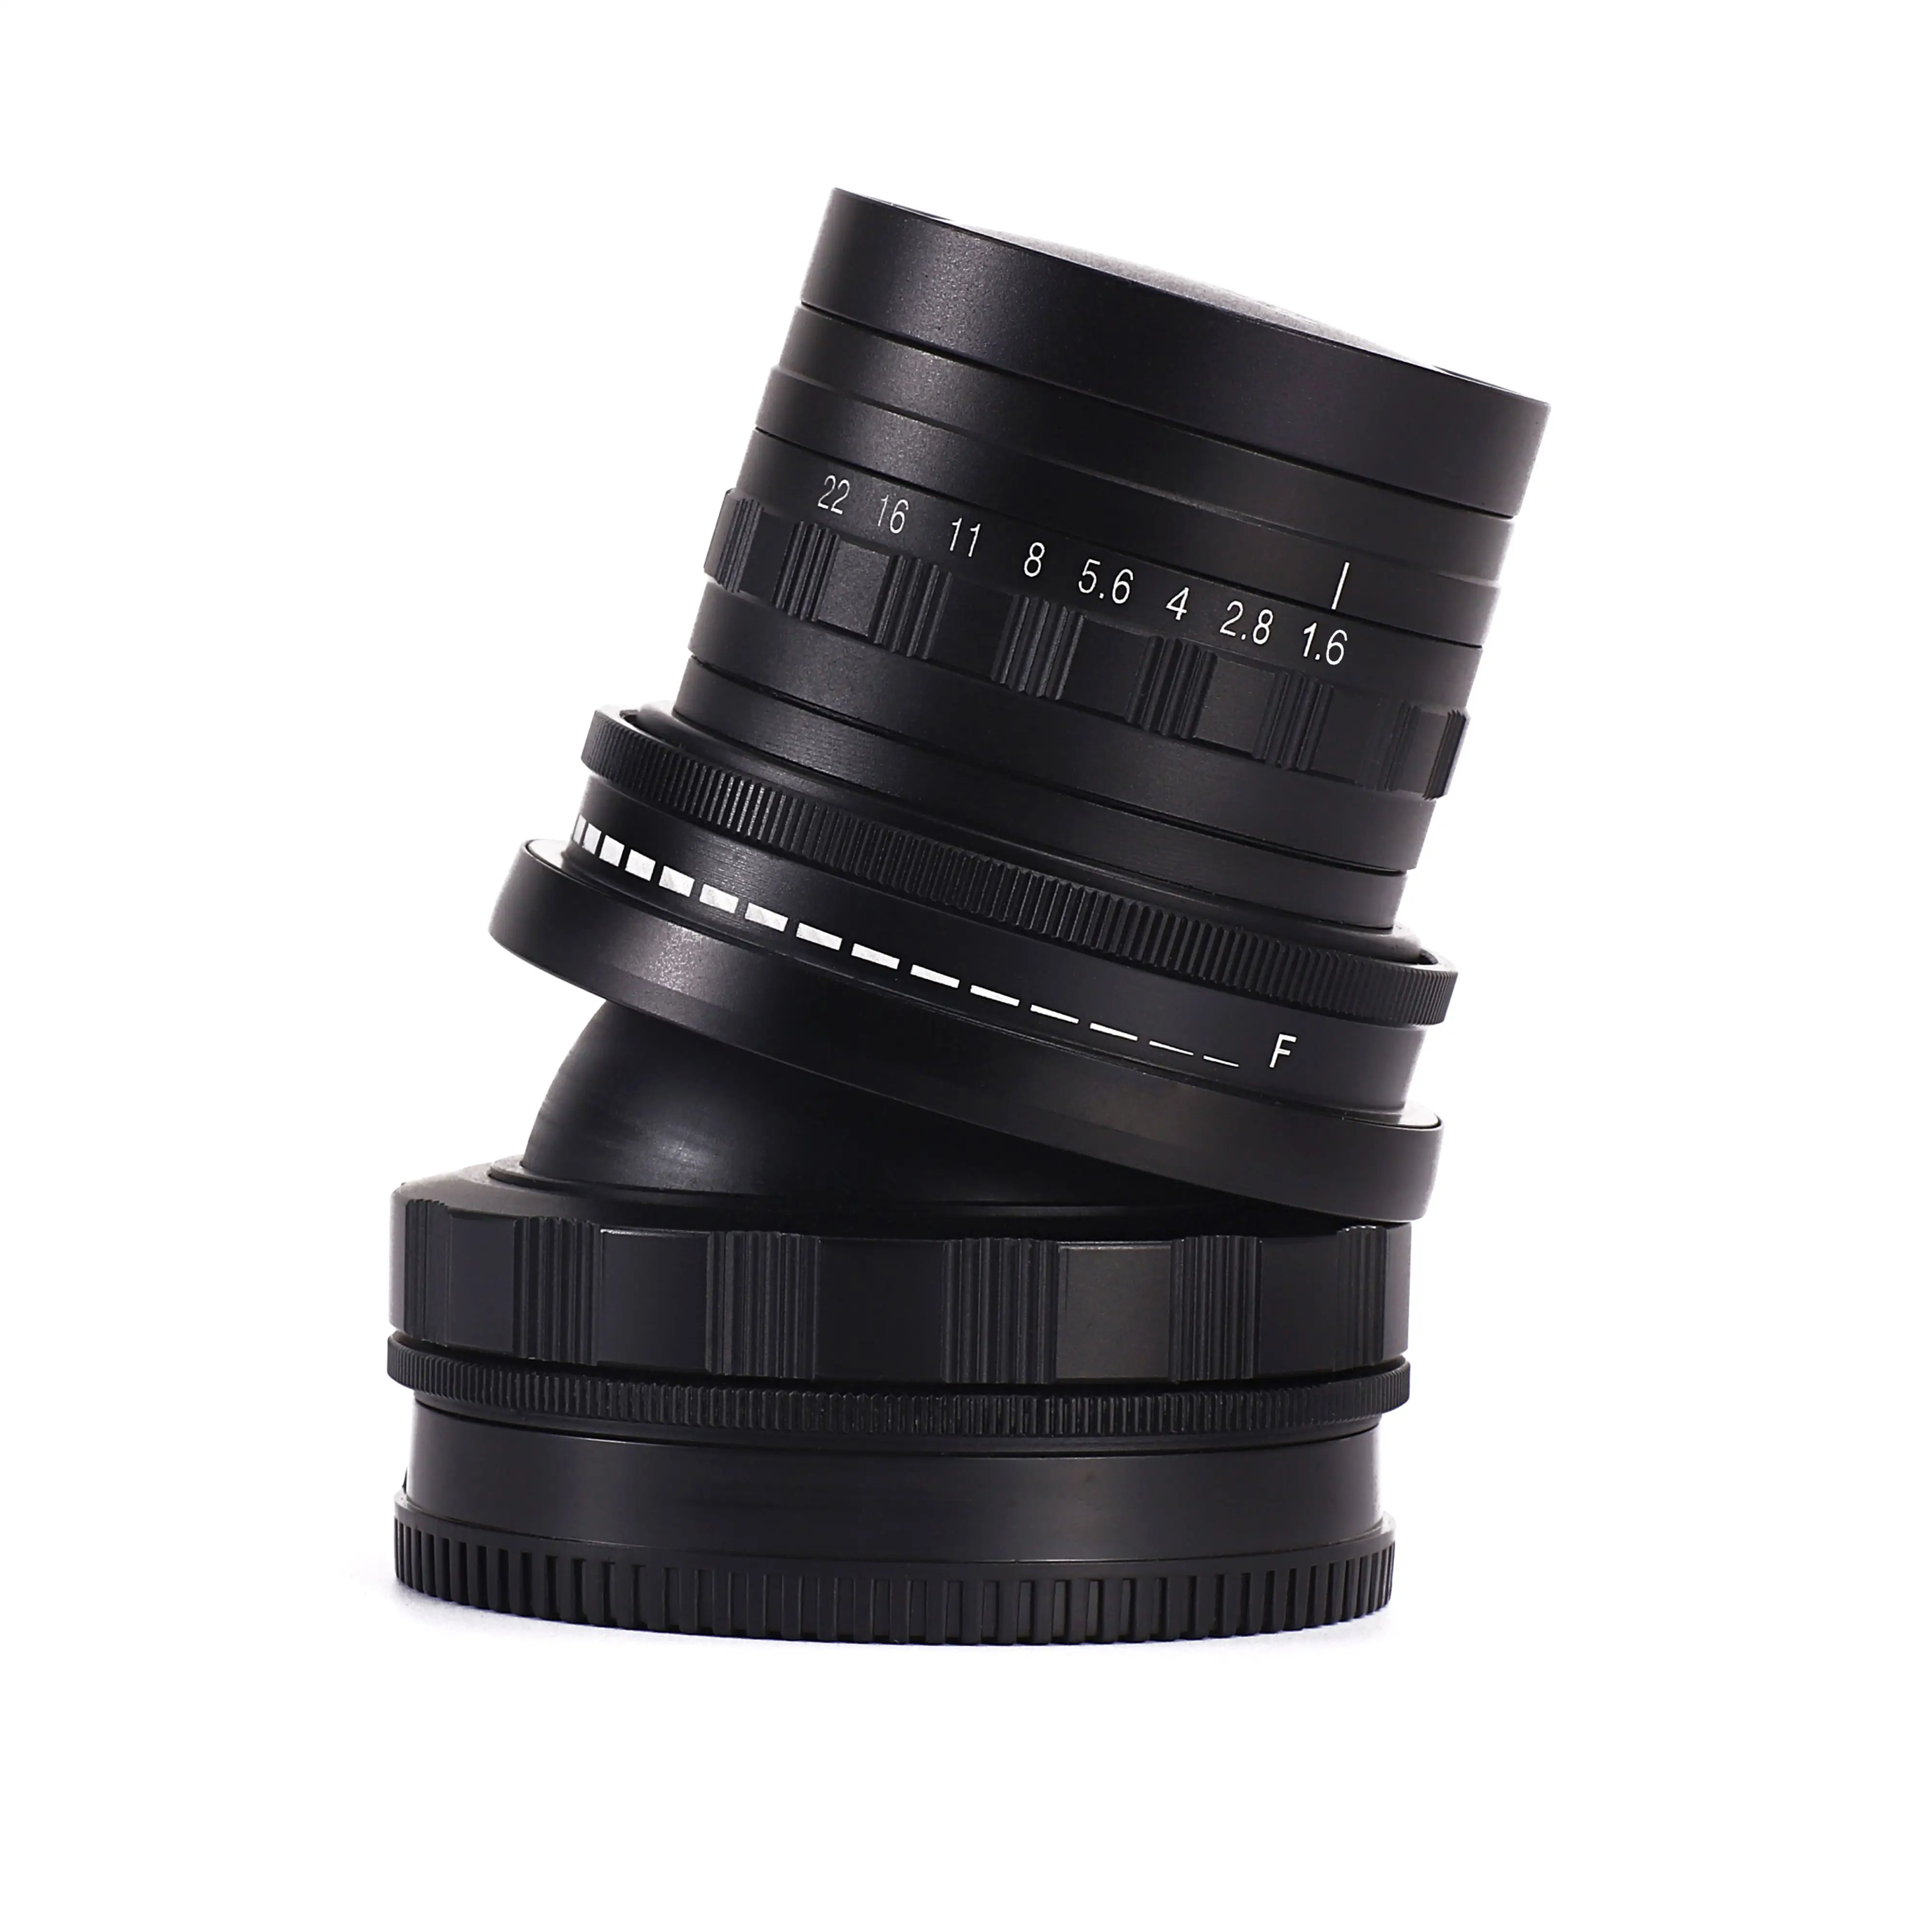 Camera lens F1.6+ 50mm TILT MAKRO CREATIVE ART DESIGN OBJEKTIV for mirrorless full frame digital camera, suitable